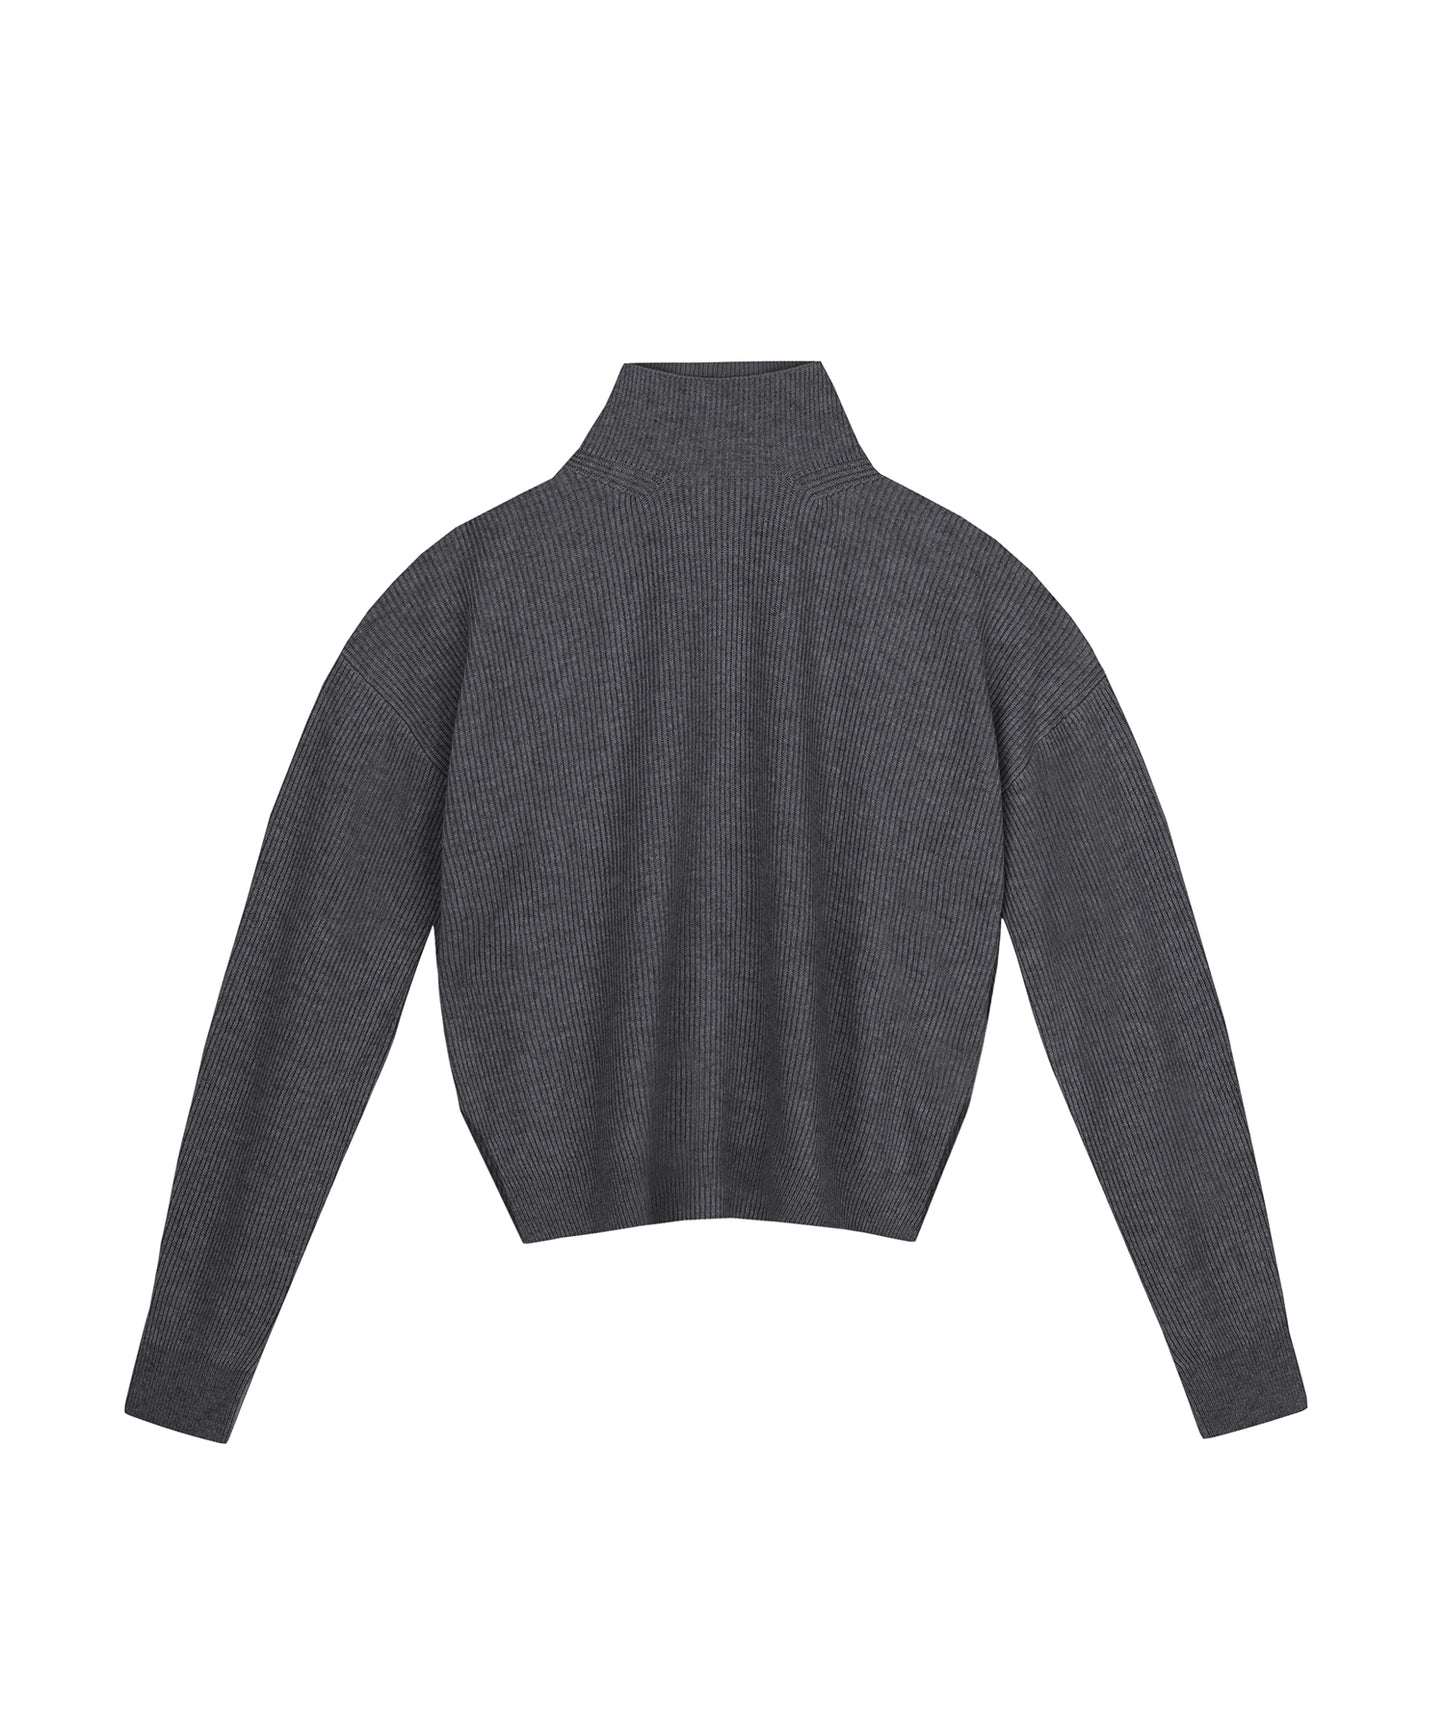 Pippa - Archive Turtleneck Sweater - Graphite